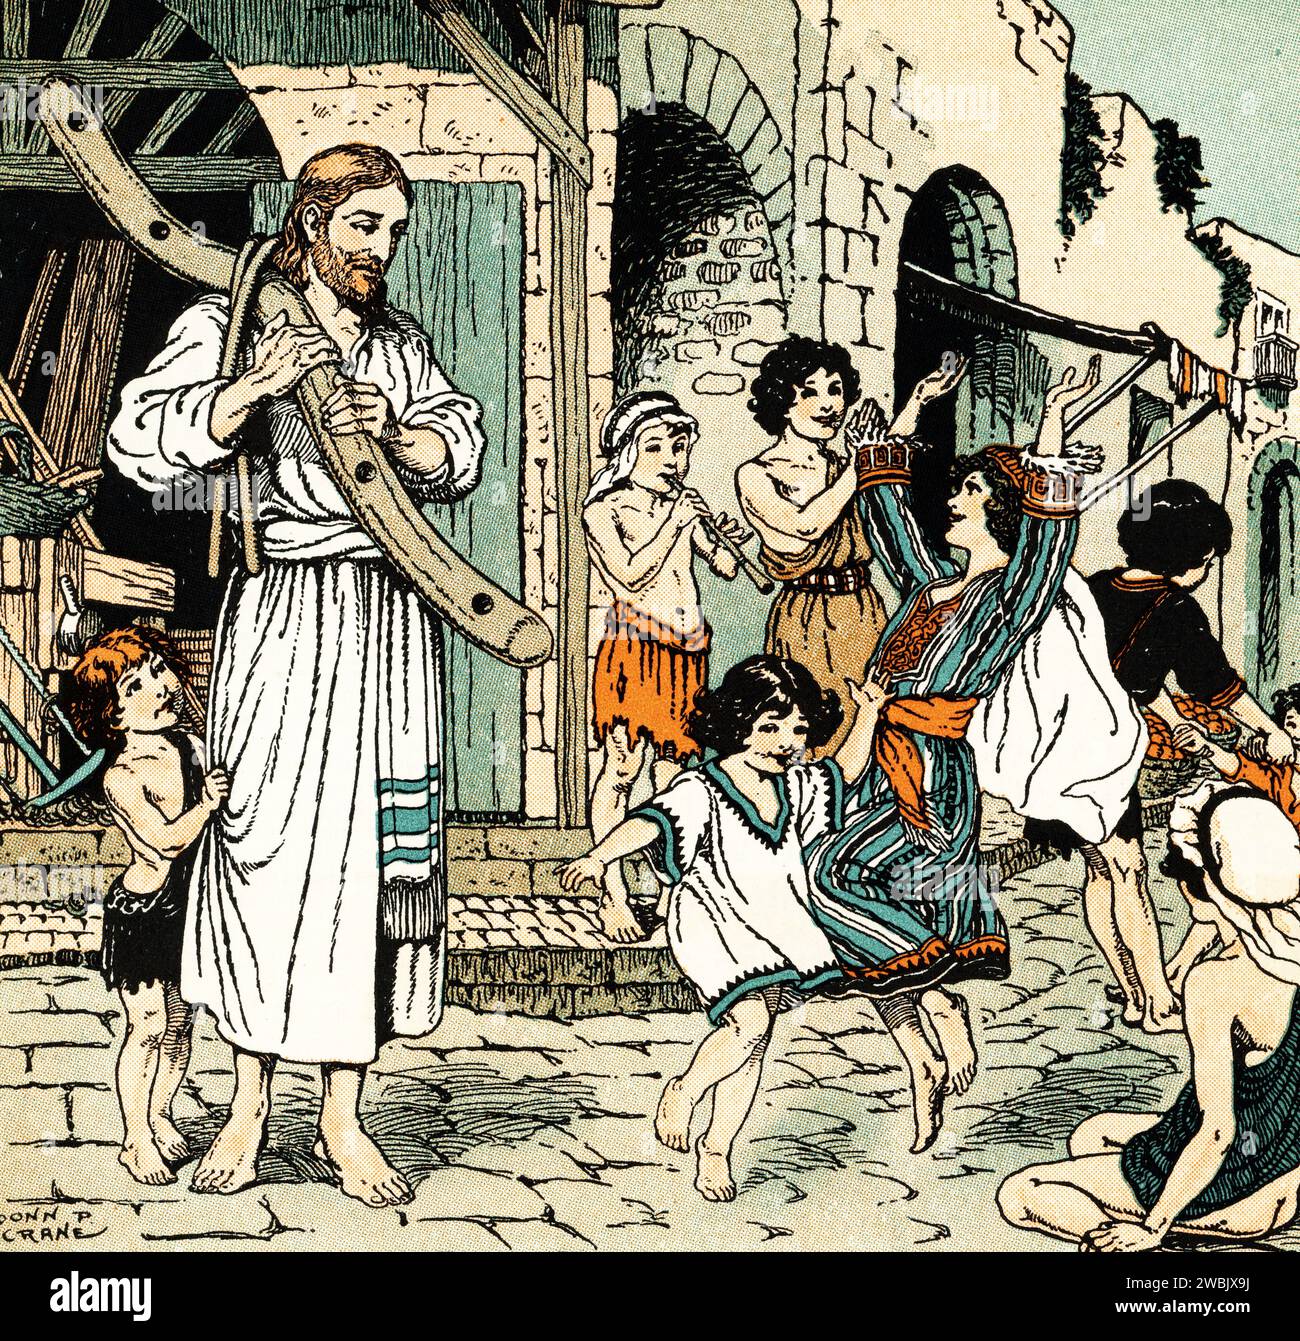 Jésus regarde les enfants danser et jouer de leurs pipes. Par Donn Philip Crane (1878-1944). Banque D'Images